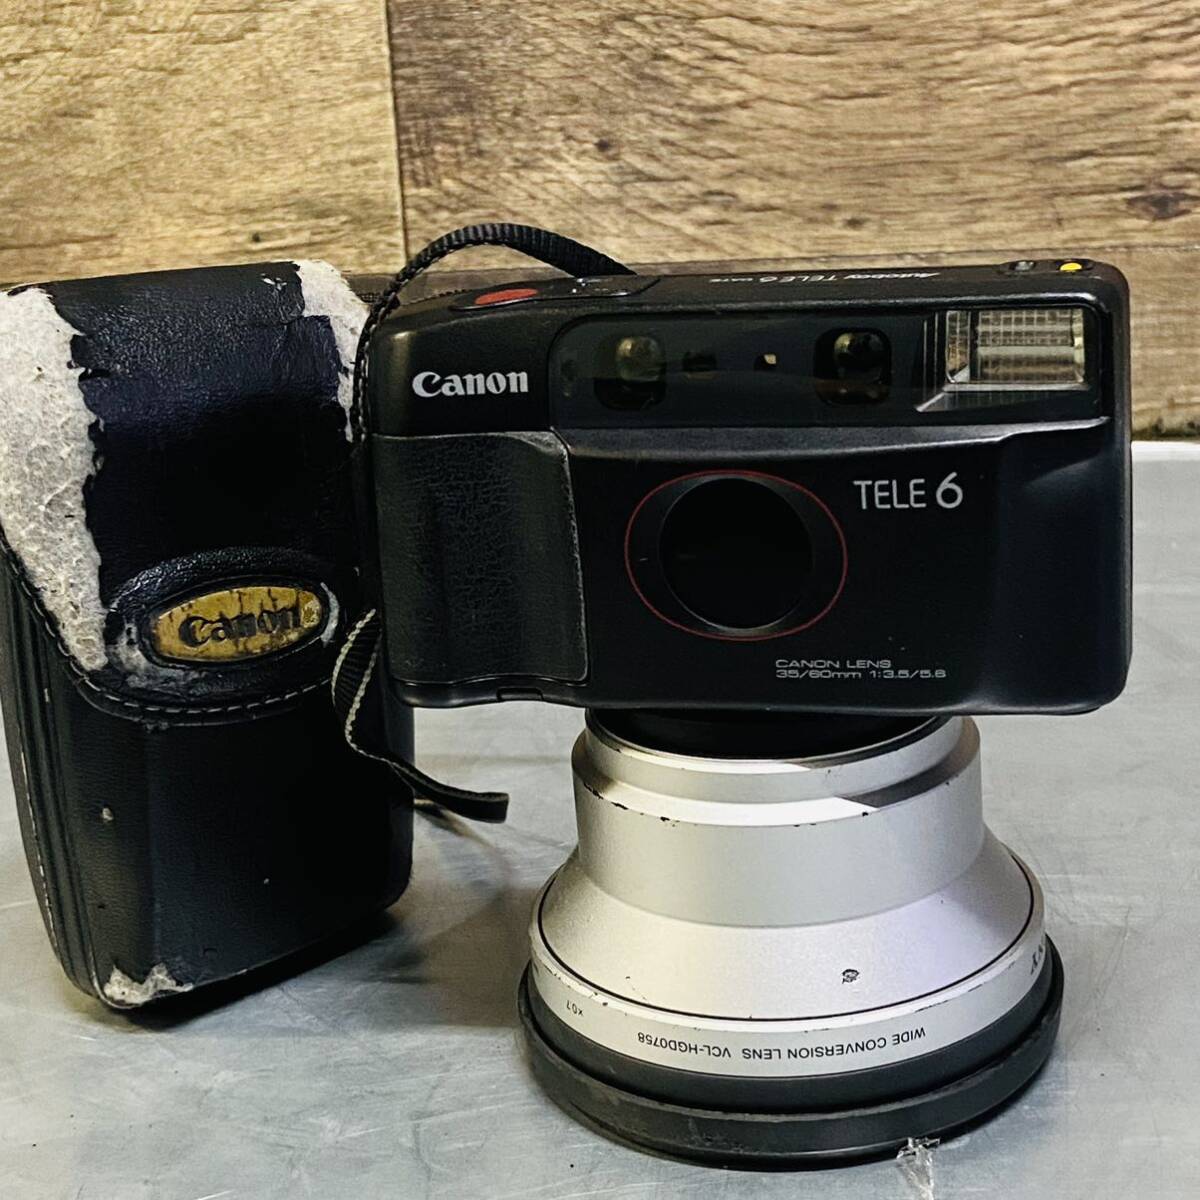 Canon Autoboy TELE6 DATE LENS 35/60mm F3.5/5.6 コンパクトフィルムカメラ 動作確認済 シャッター、フラッシュOK の画像1